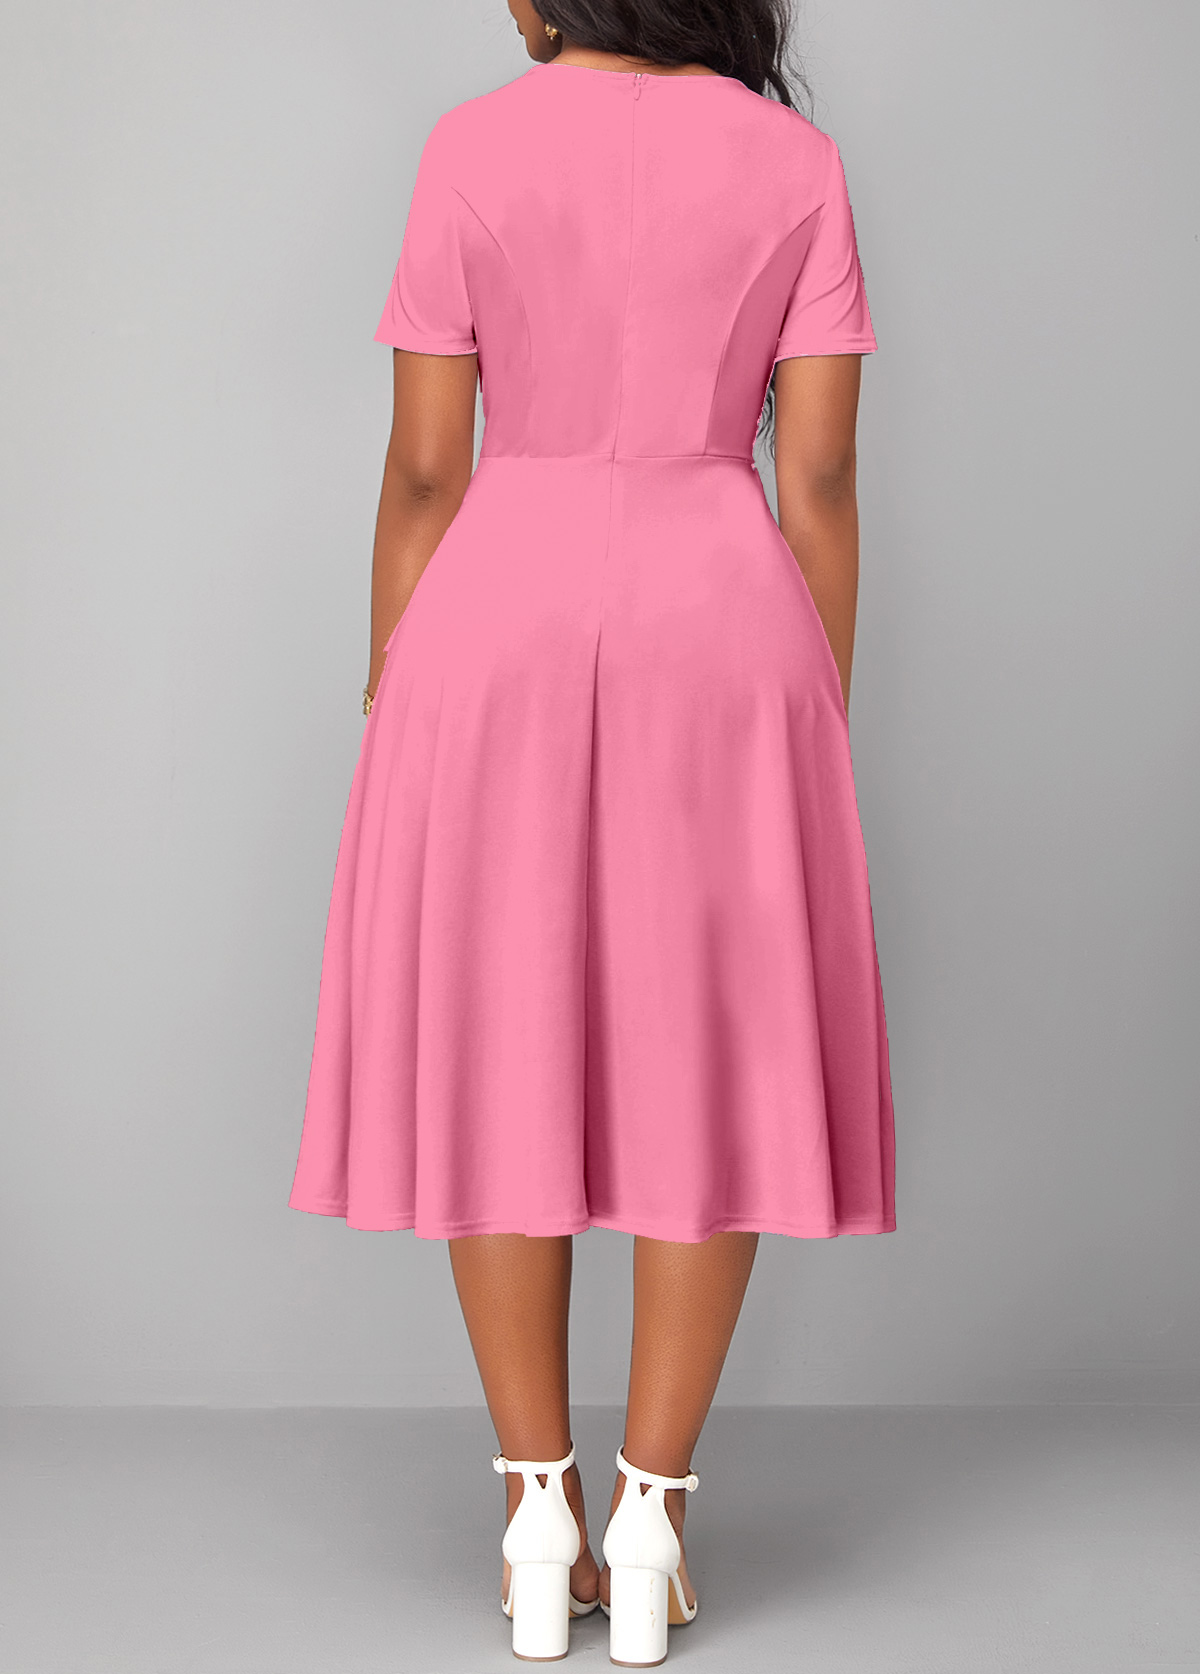 Twist Round Neck Short Sleeve Pink Dress